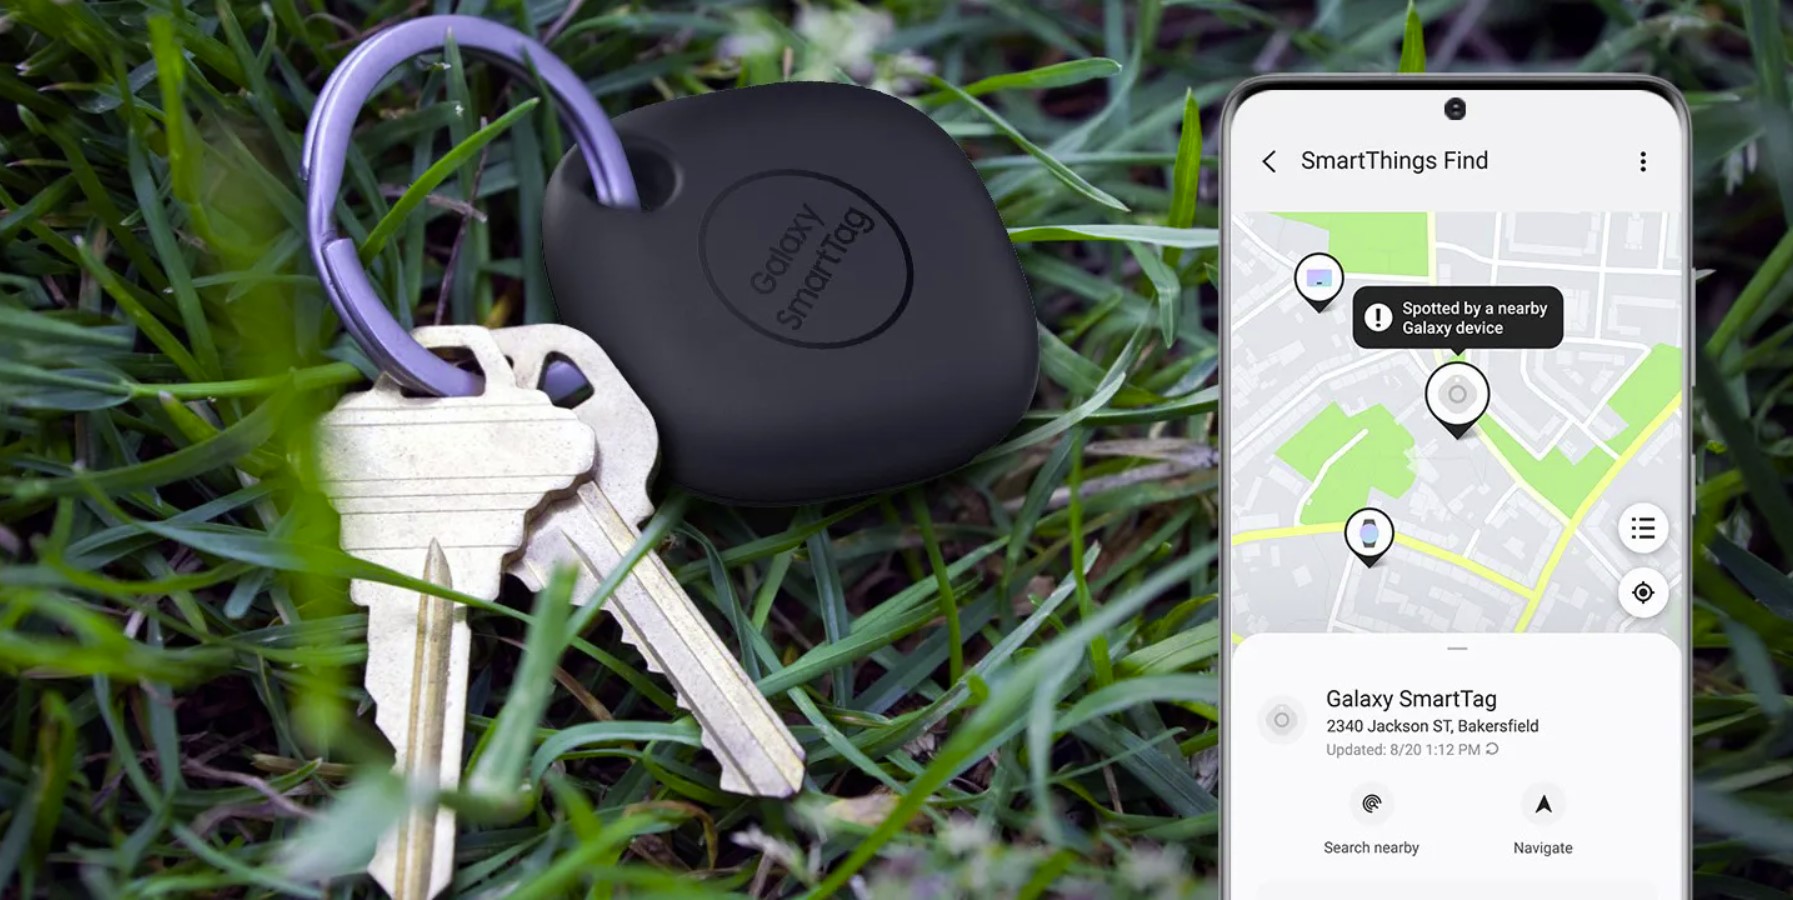 SmartThings Find de Samsung alcanza un nuevo hito con 200 millones de nodos, ayudando a la localización de dispositivos perdidos